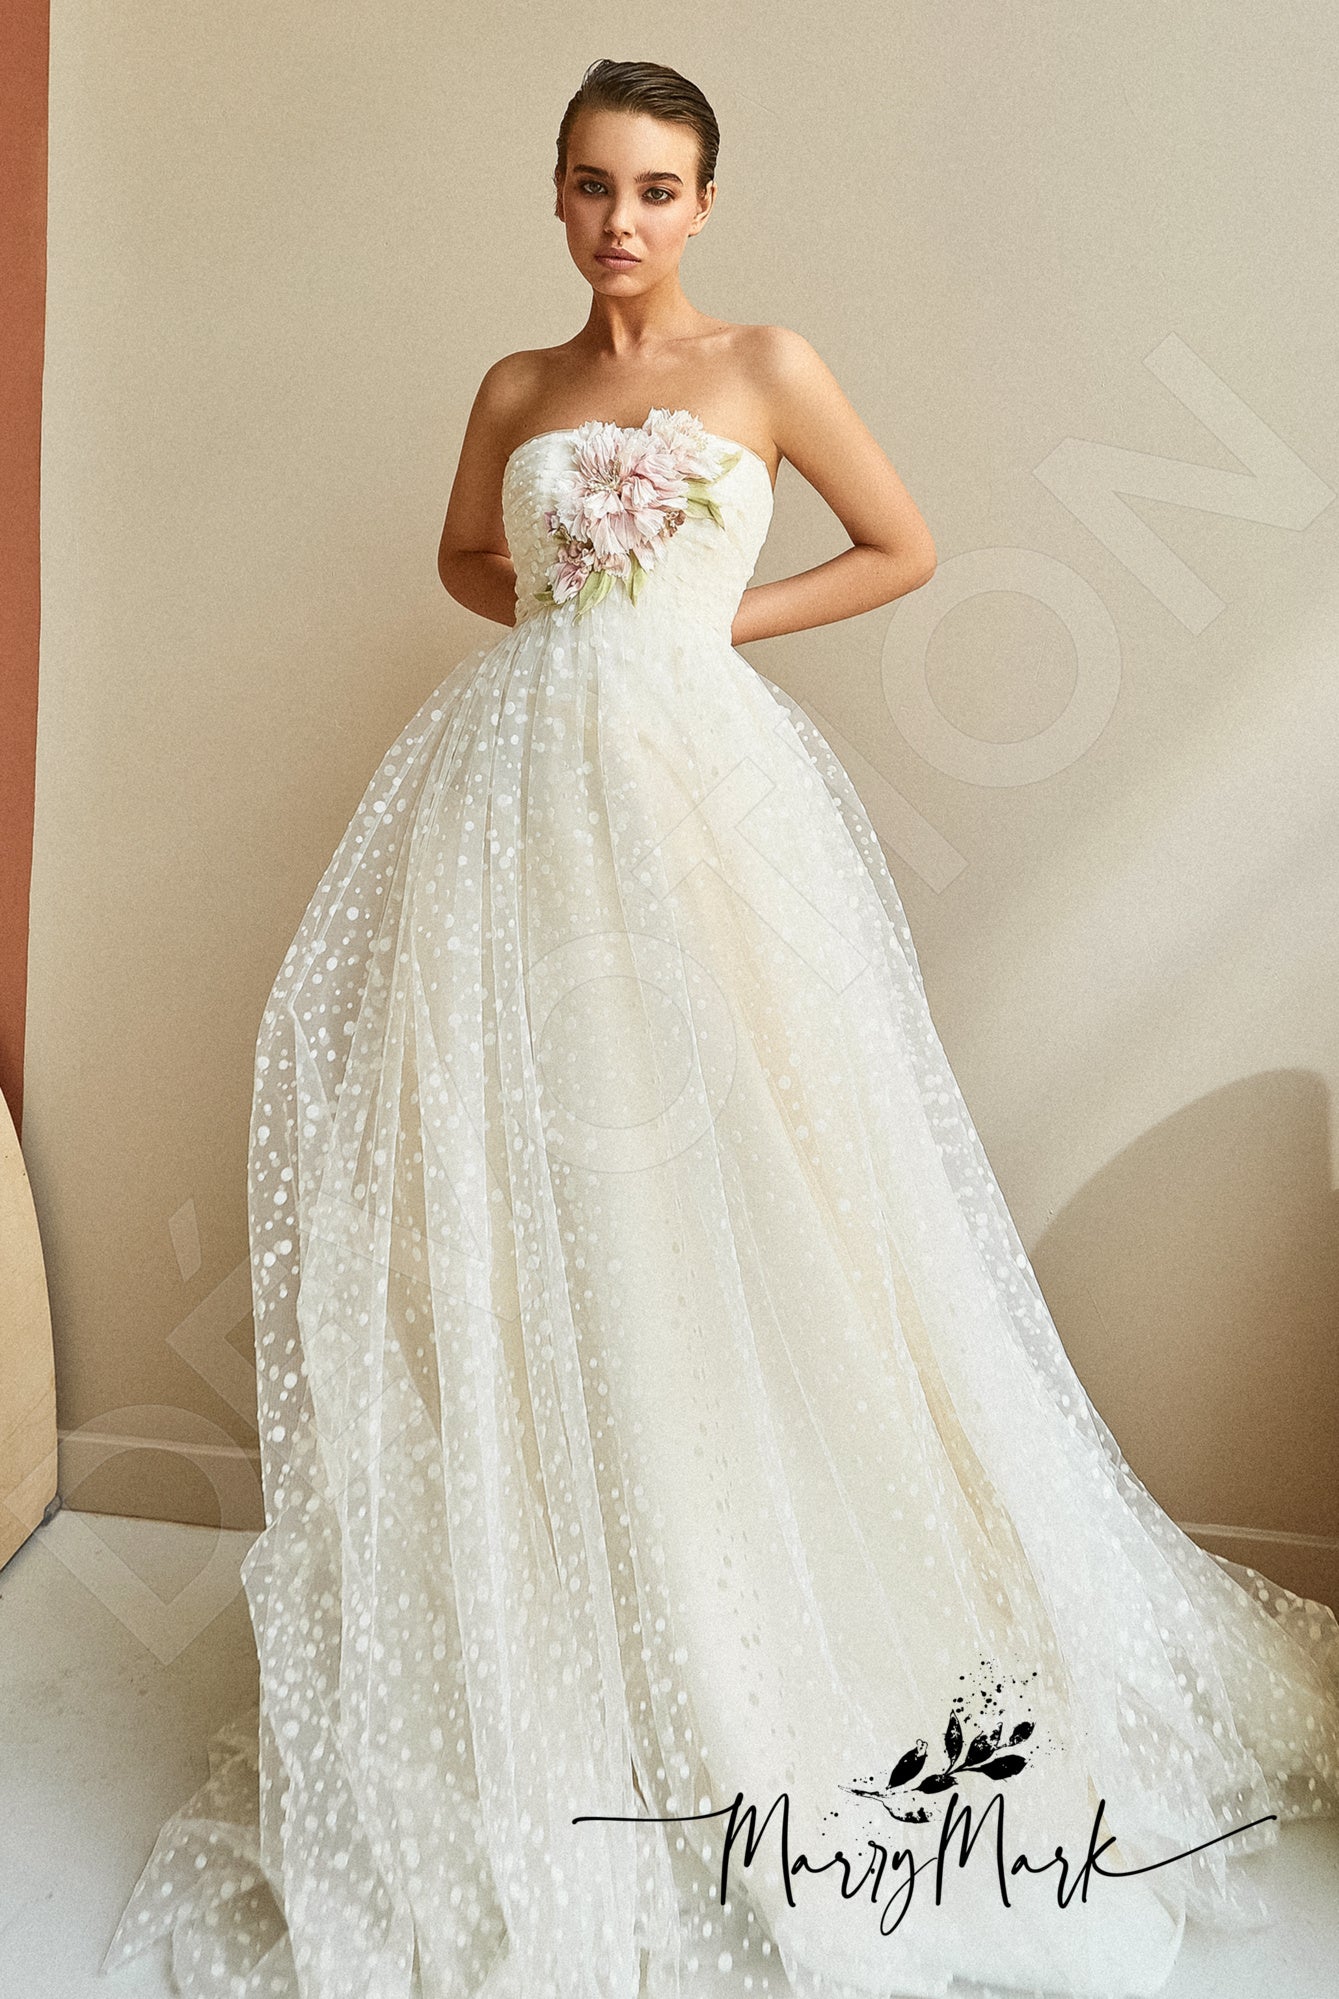 Lisma Open back A-line Strapless Wedding Dress 2